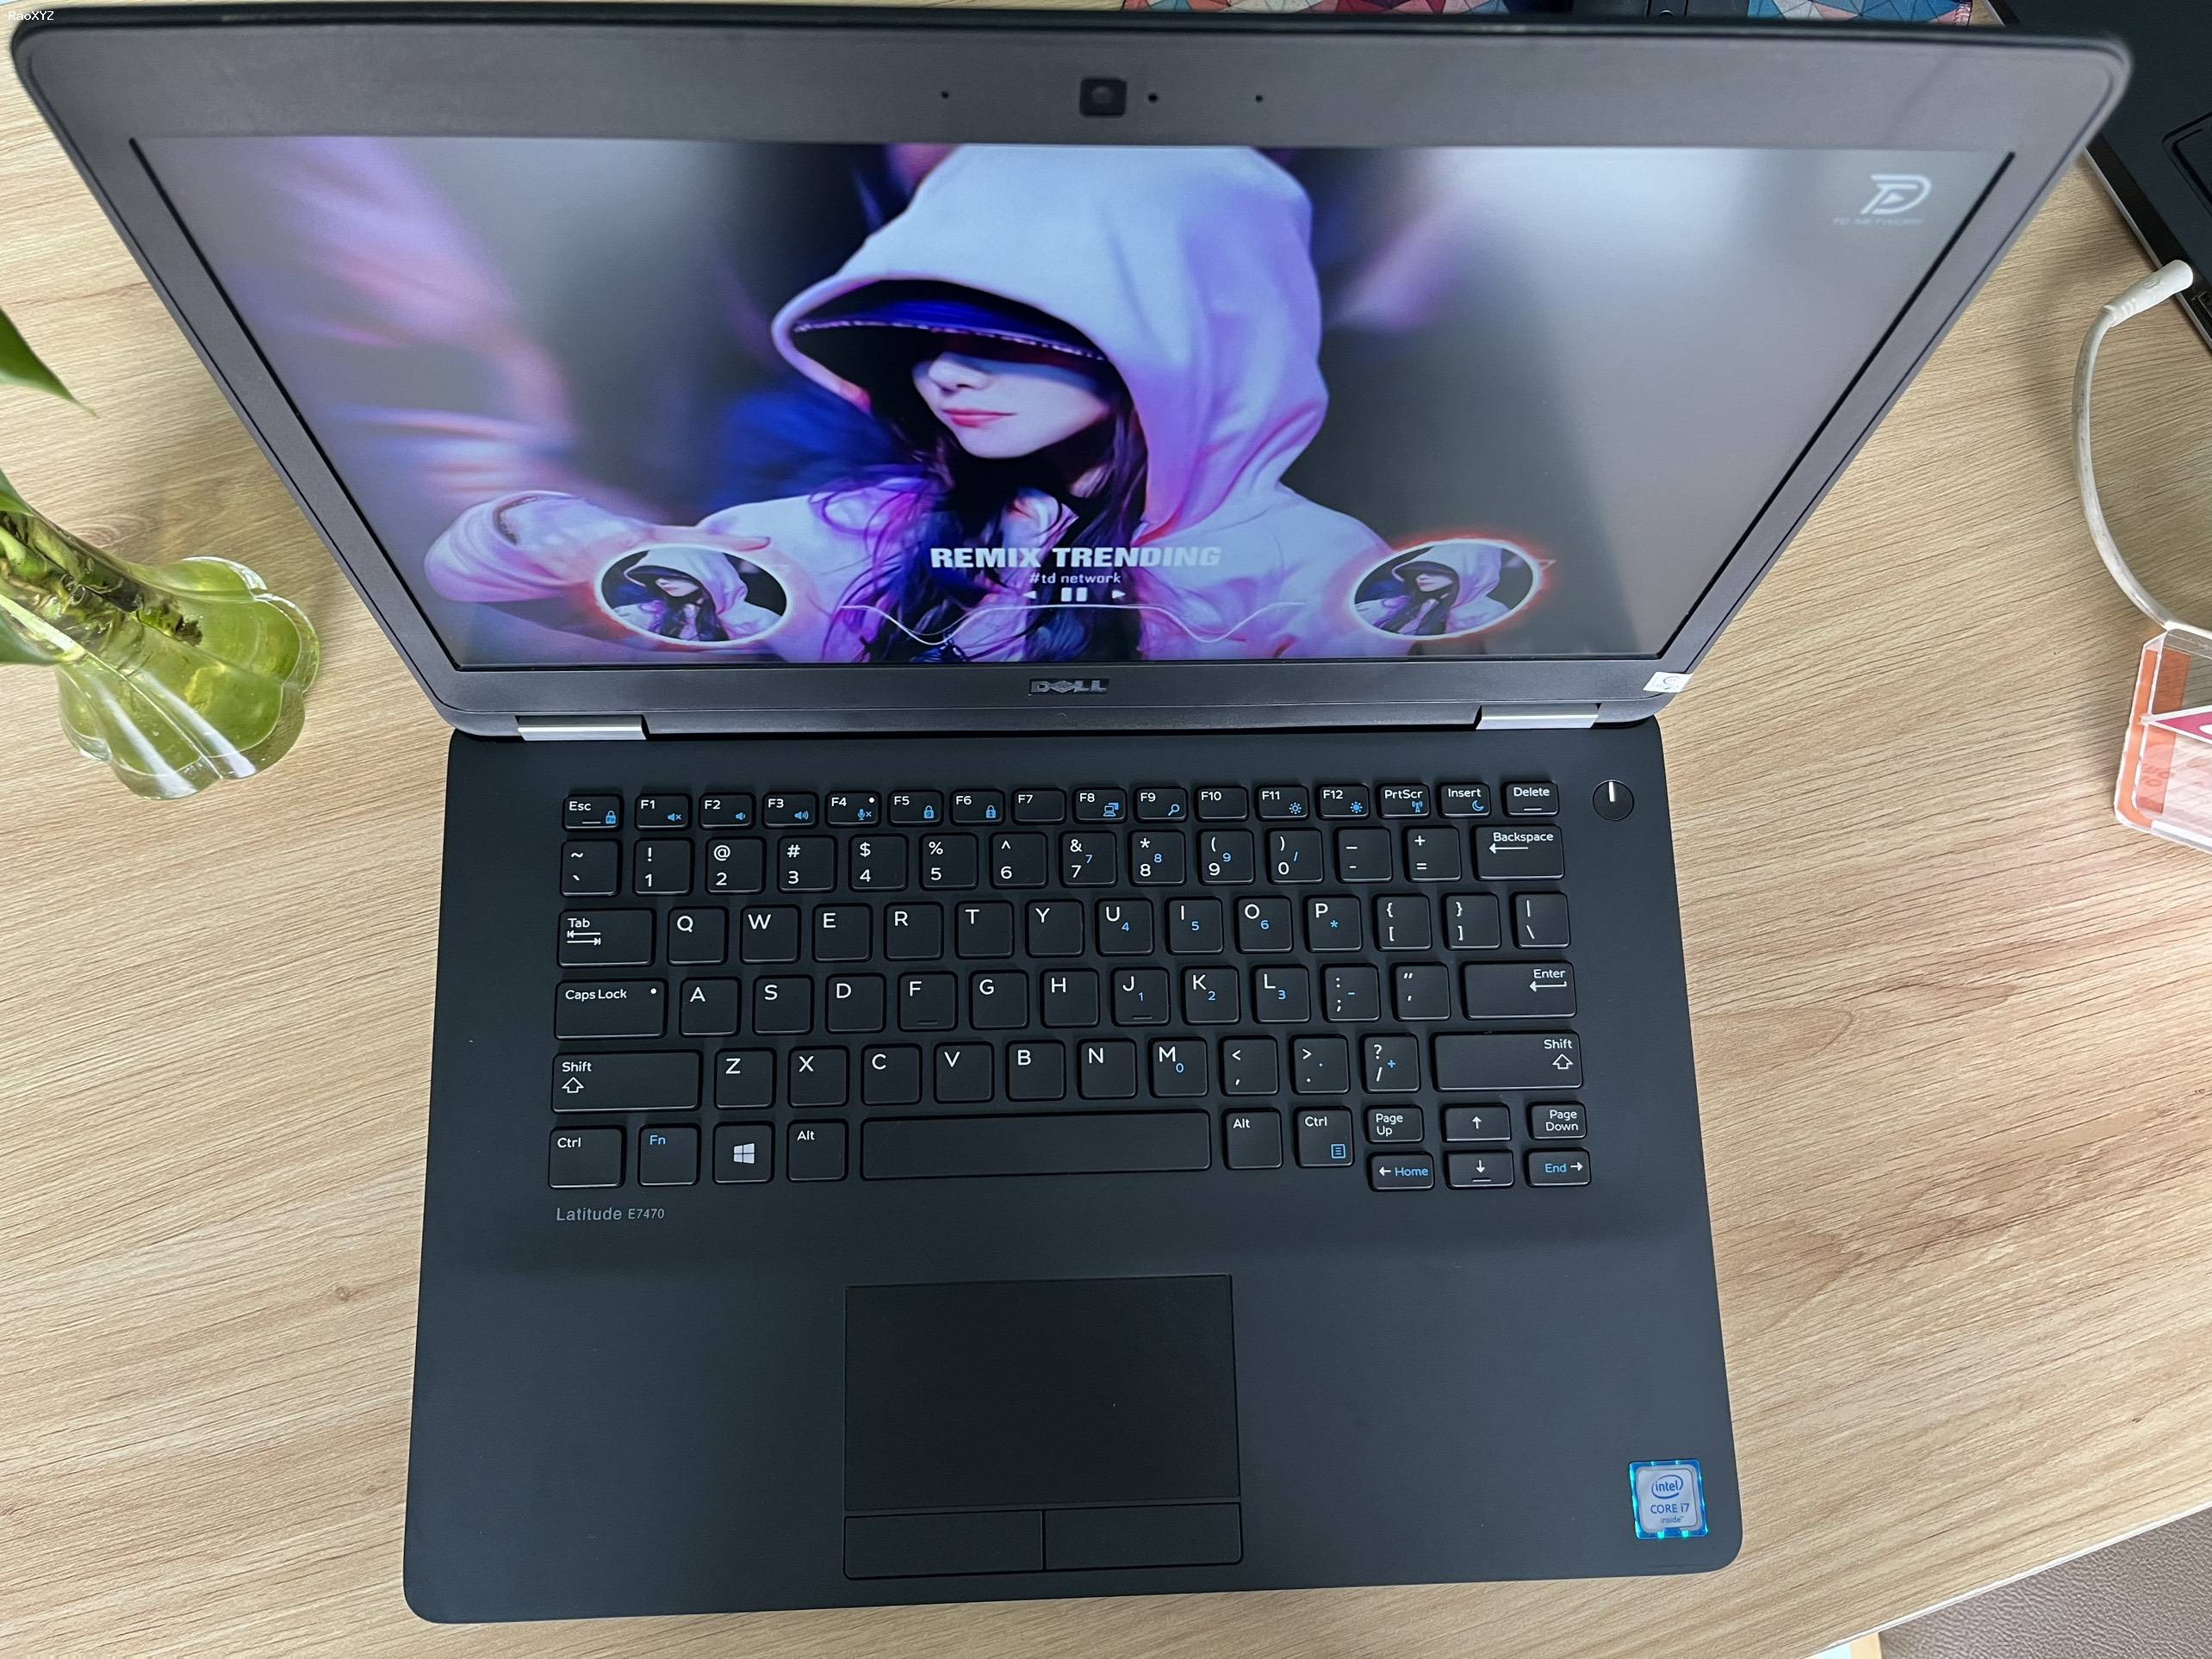 Laptop Giá Rẻ Bình Dương - Lựa Chọn Tối Ưu Tại Lê Nguyễn PC